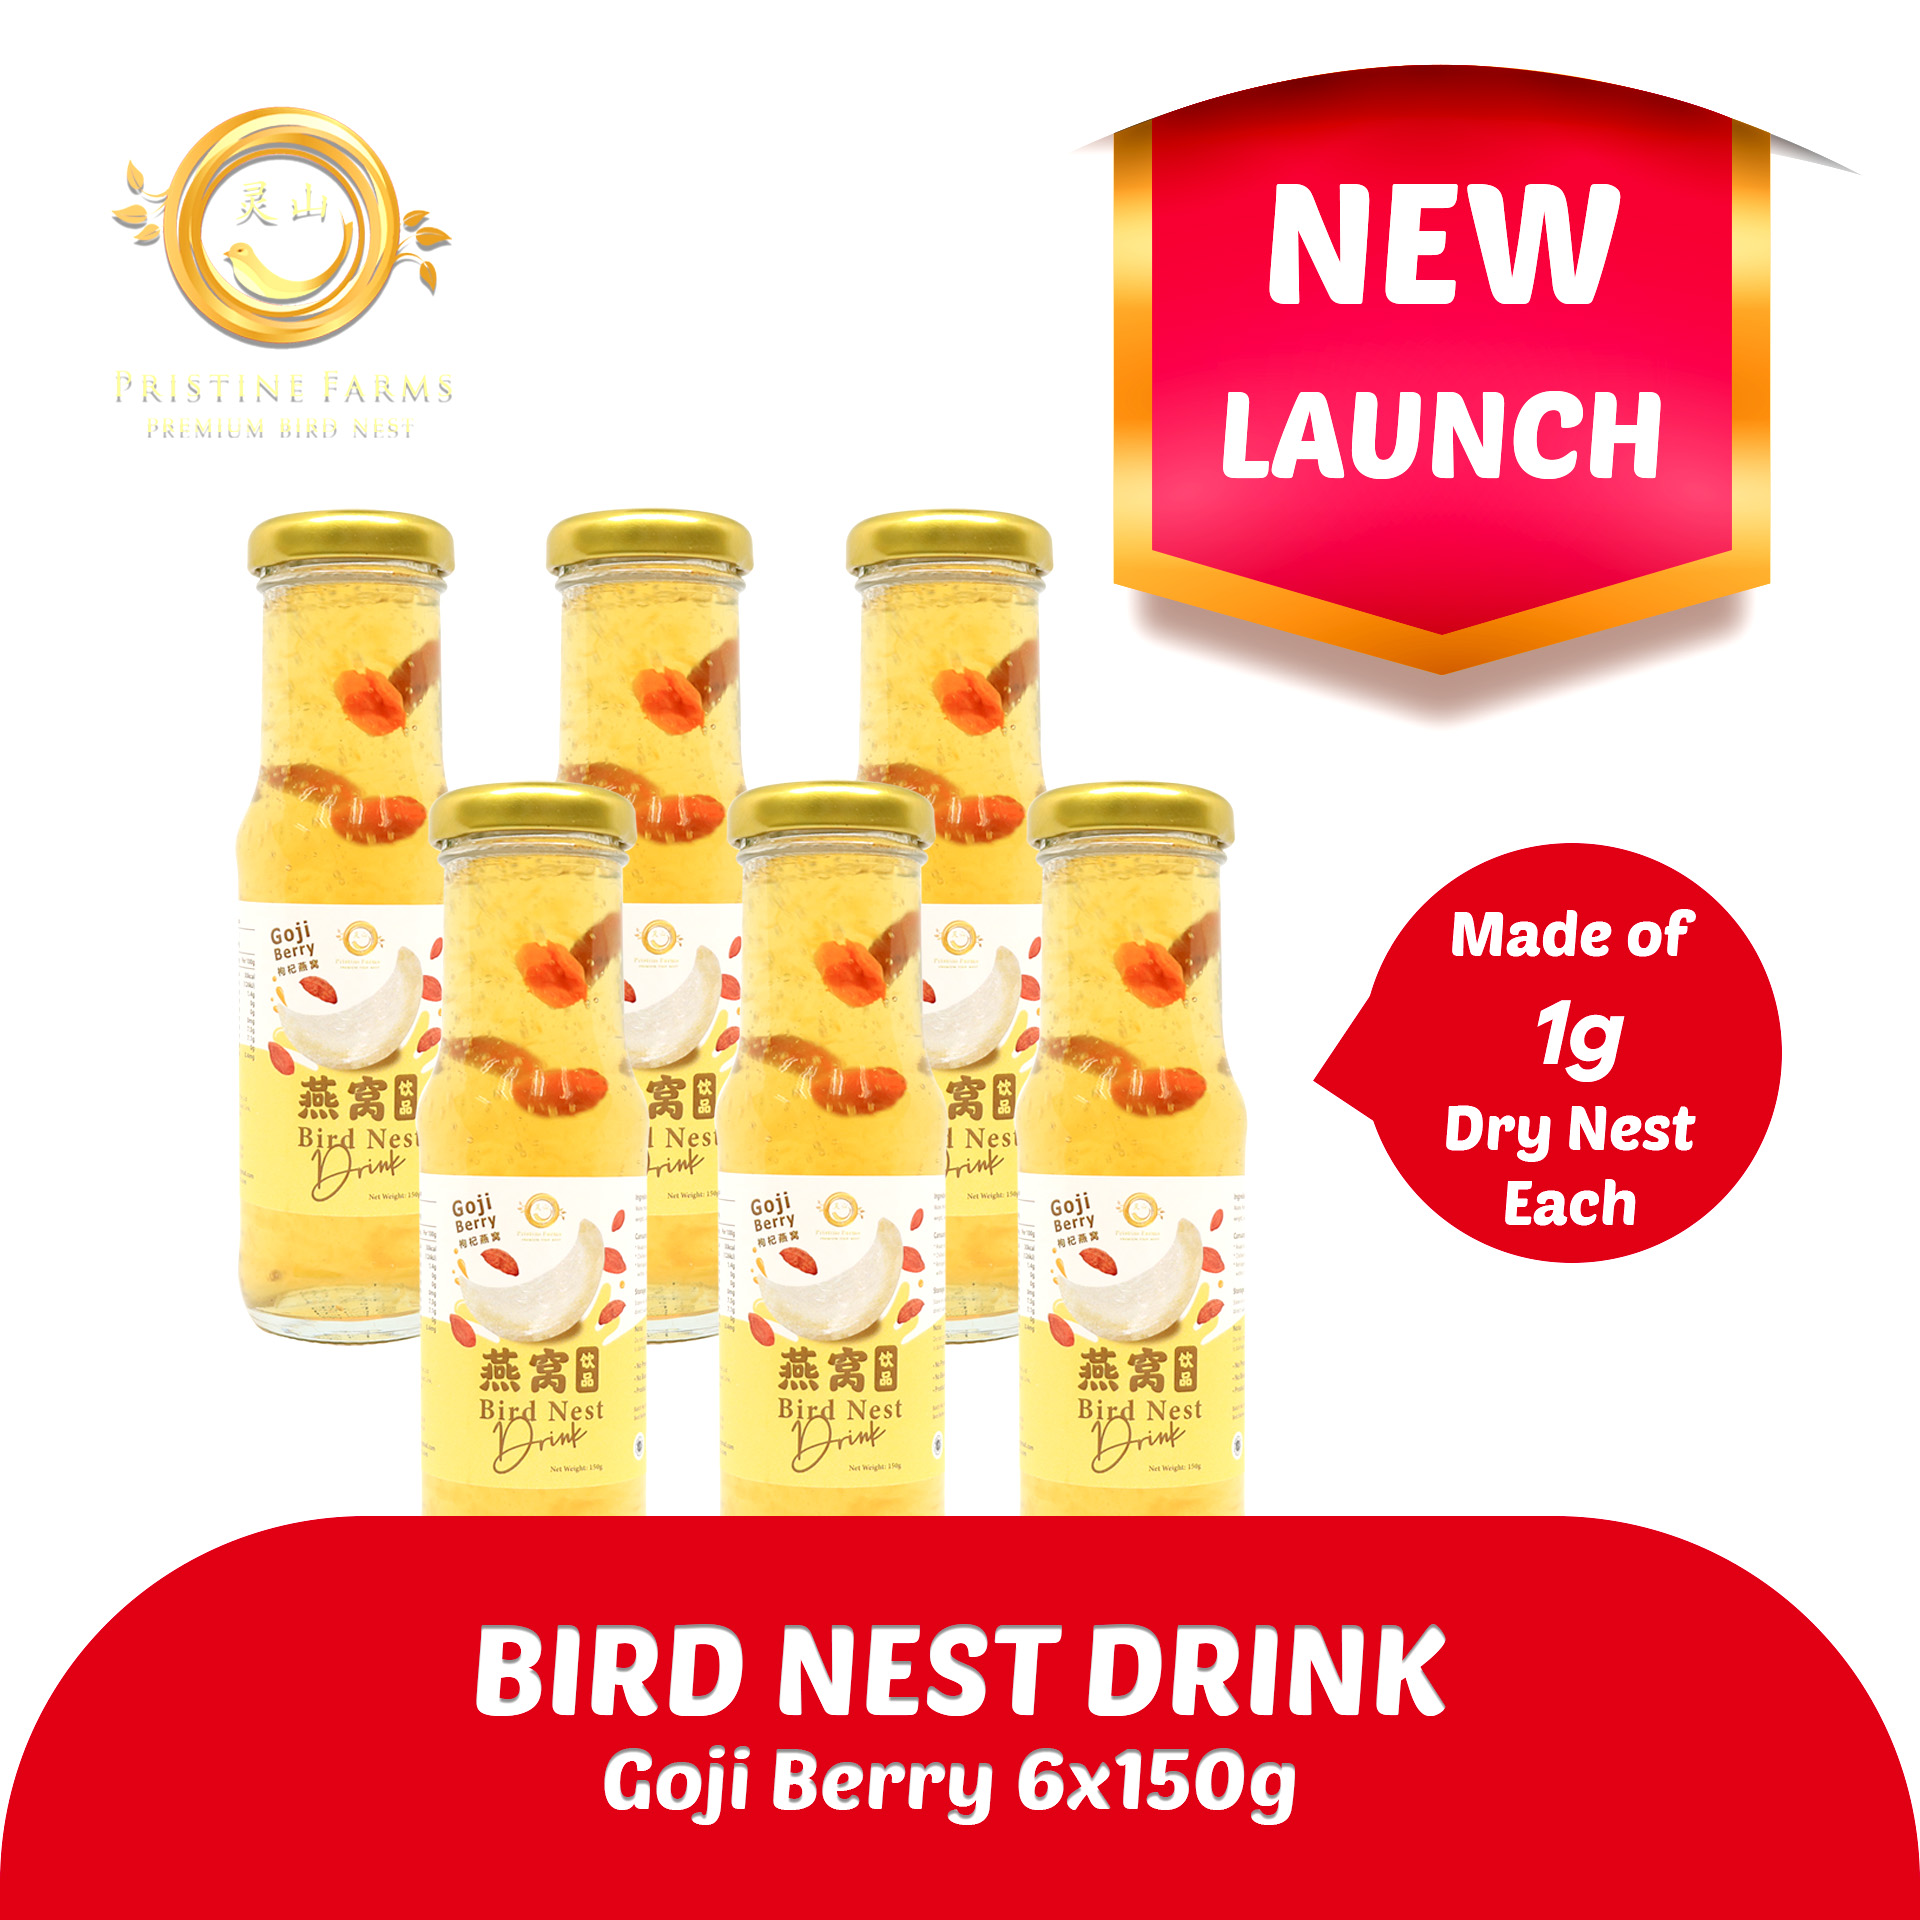 Pristine Farm Bird Nest Goji Berry Drink with 1g of Dry Nest - Bundle of 6 x 150g